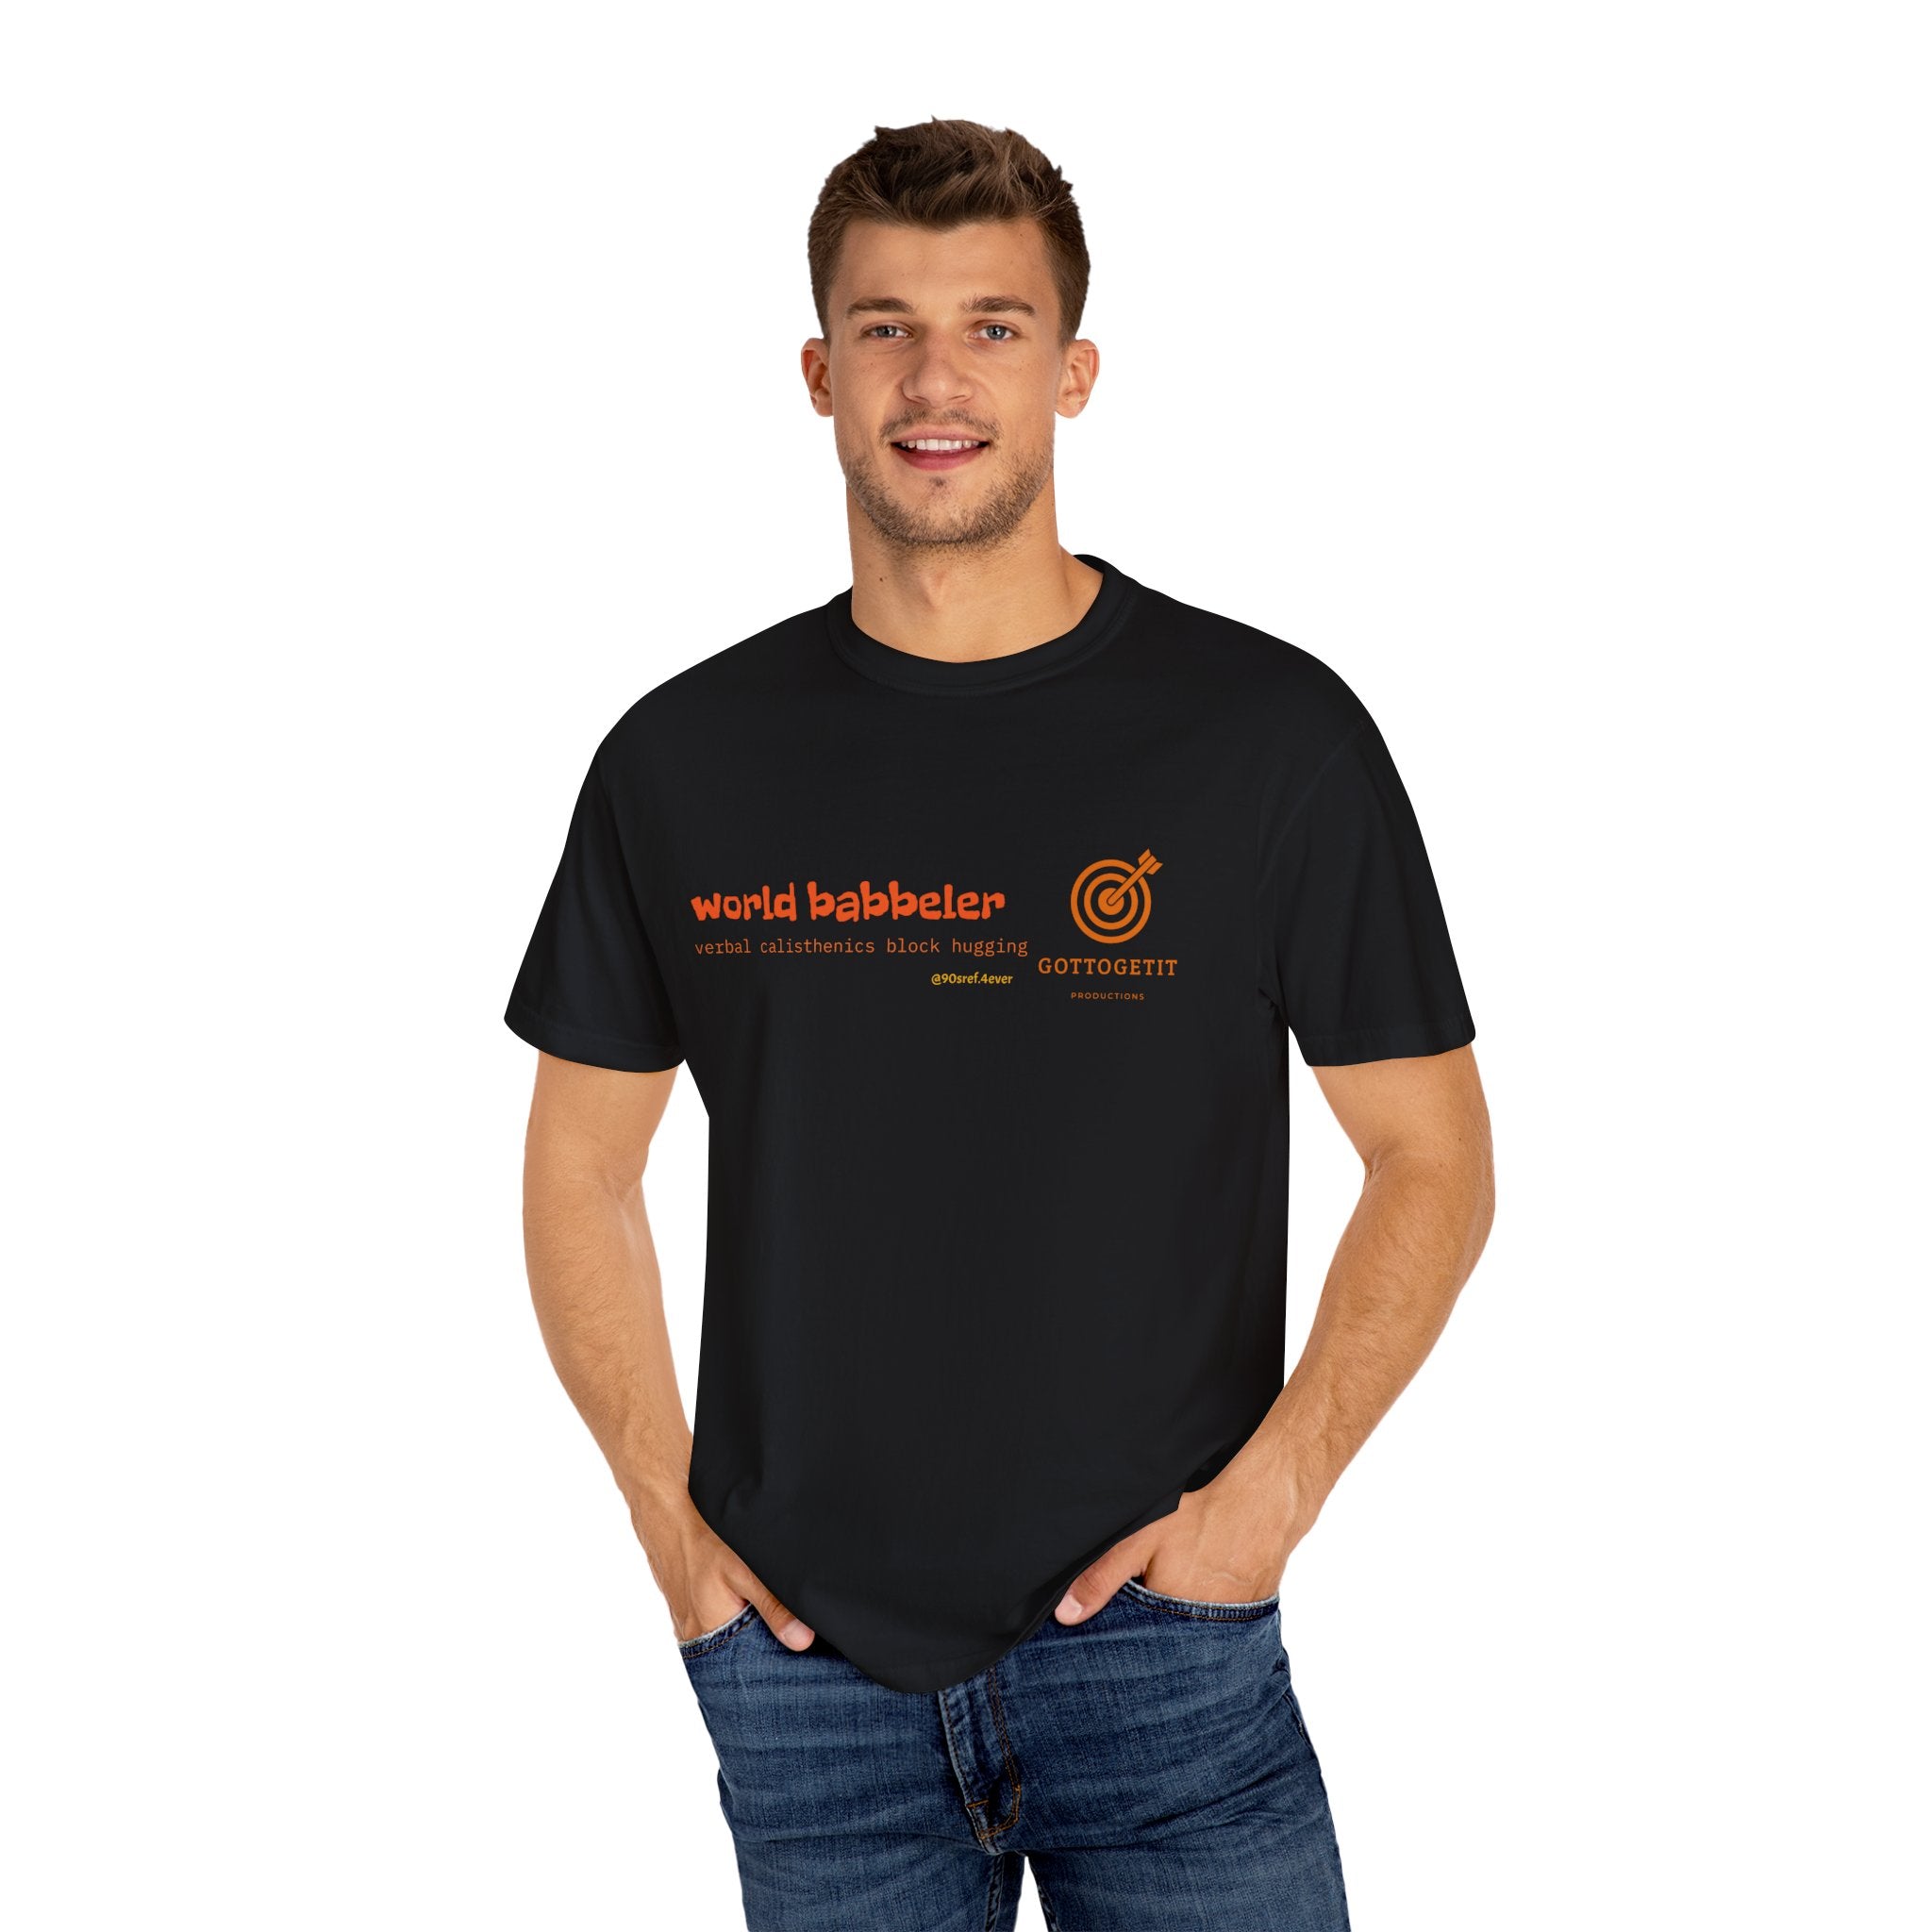 WORLD BABBELER Unisex Garment-Dyed T-shirt